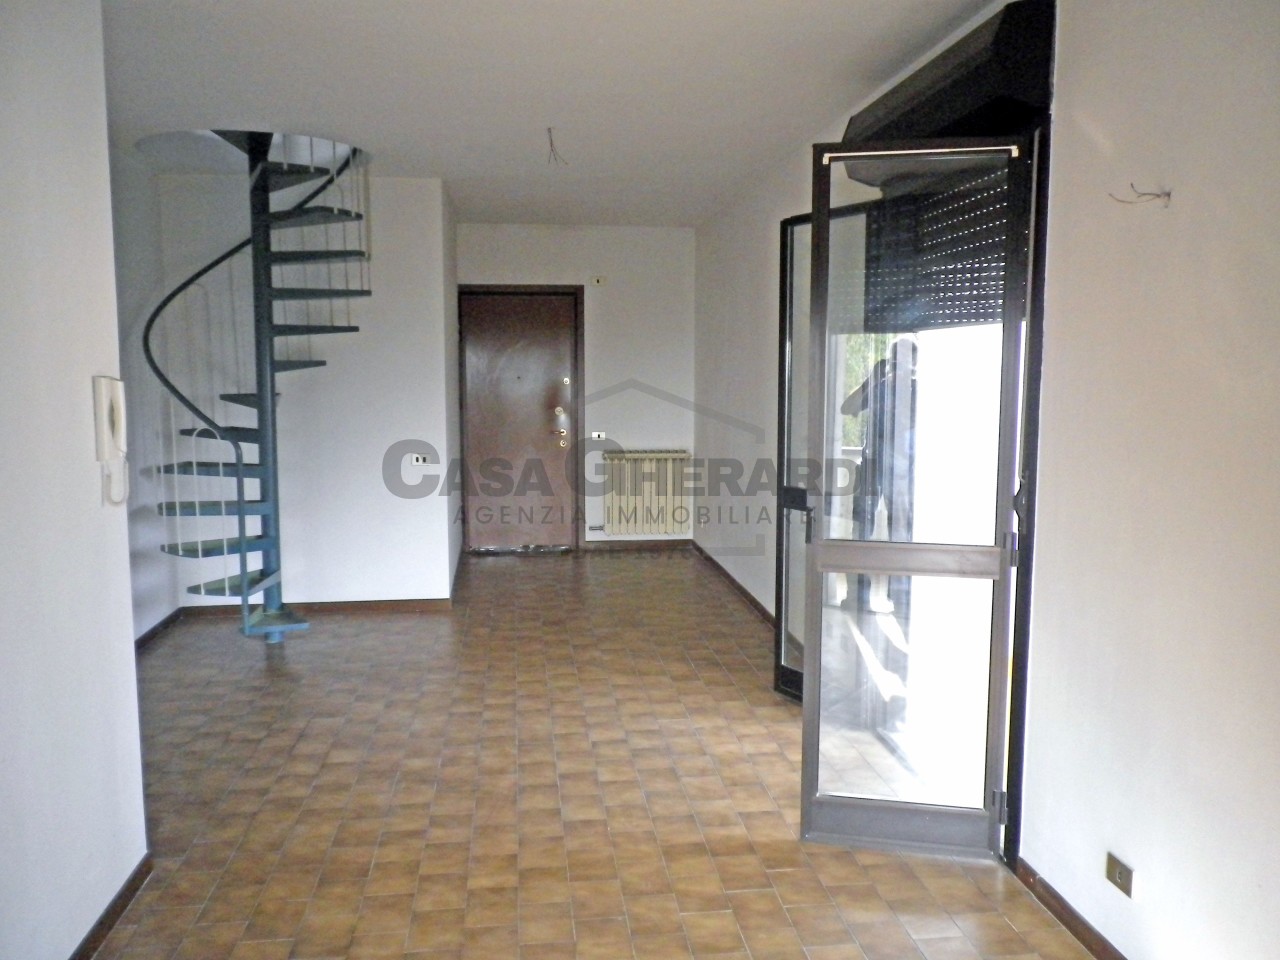 Appartamento in vendita a Brembate di Sopra, 3 locali, prezzo € 150.000 | PortaleAgenzieImmobiliari.it